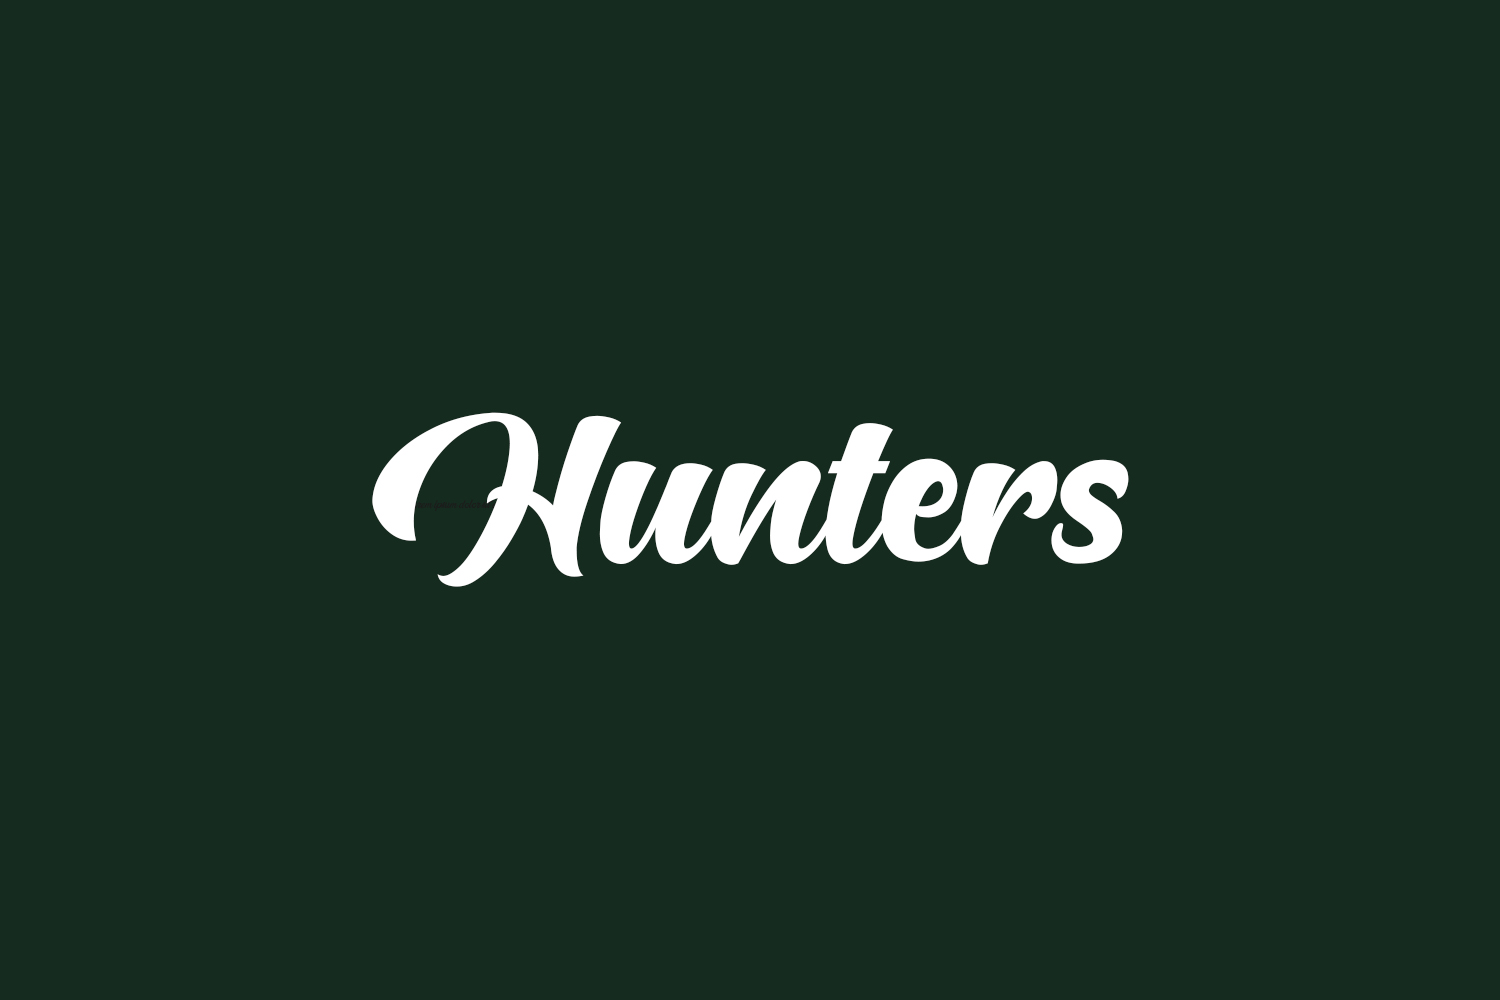 Hunters Free Font